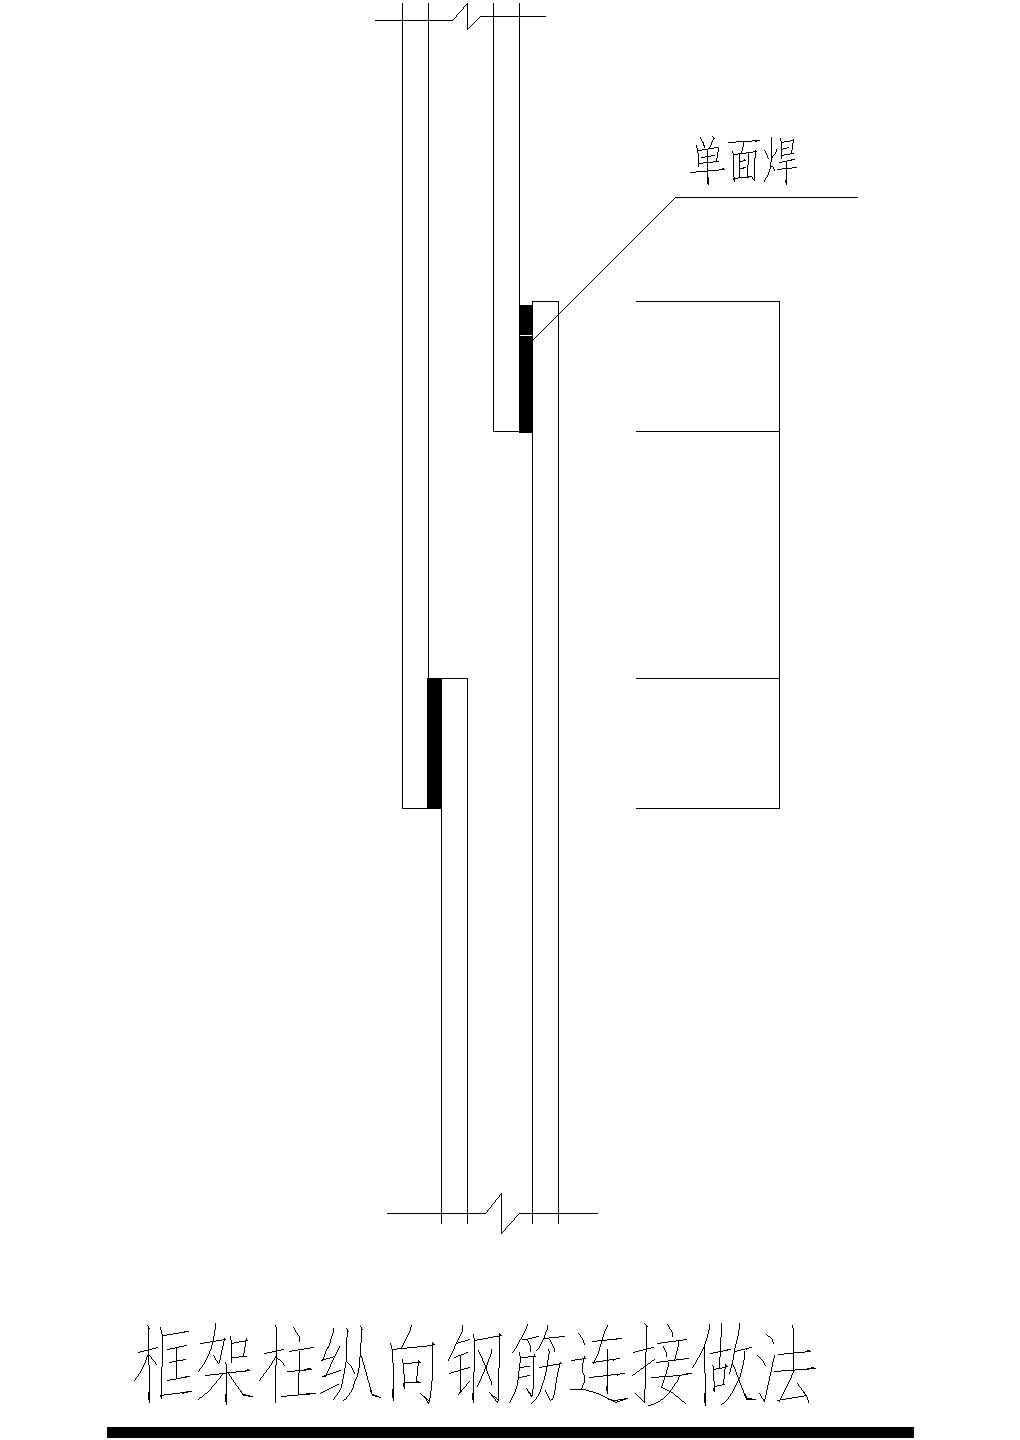 框架柱纵向钢筋连接做法CAD节点详图-图二